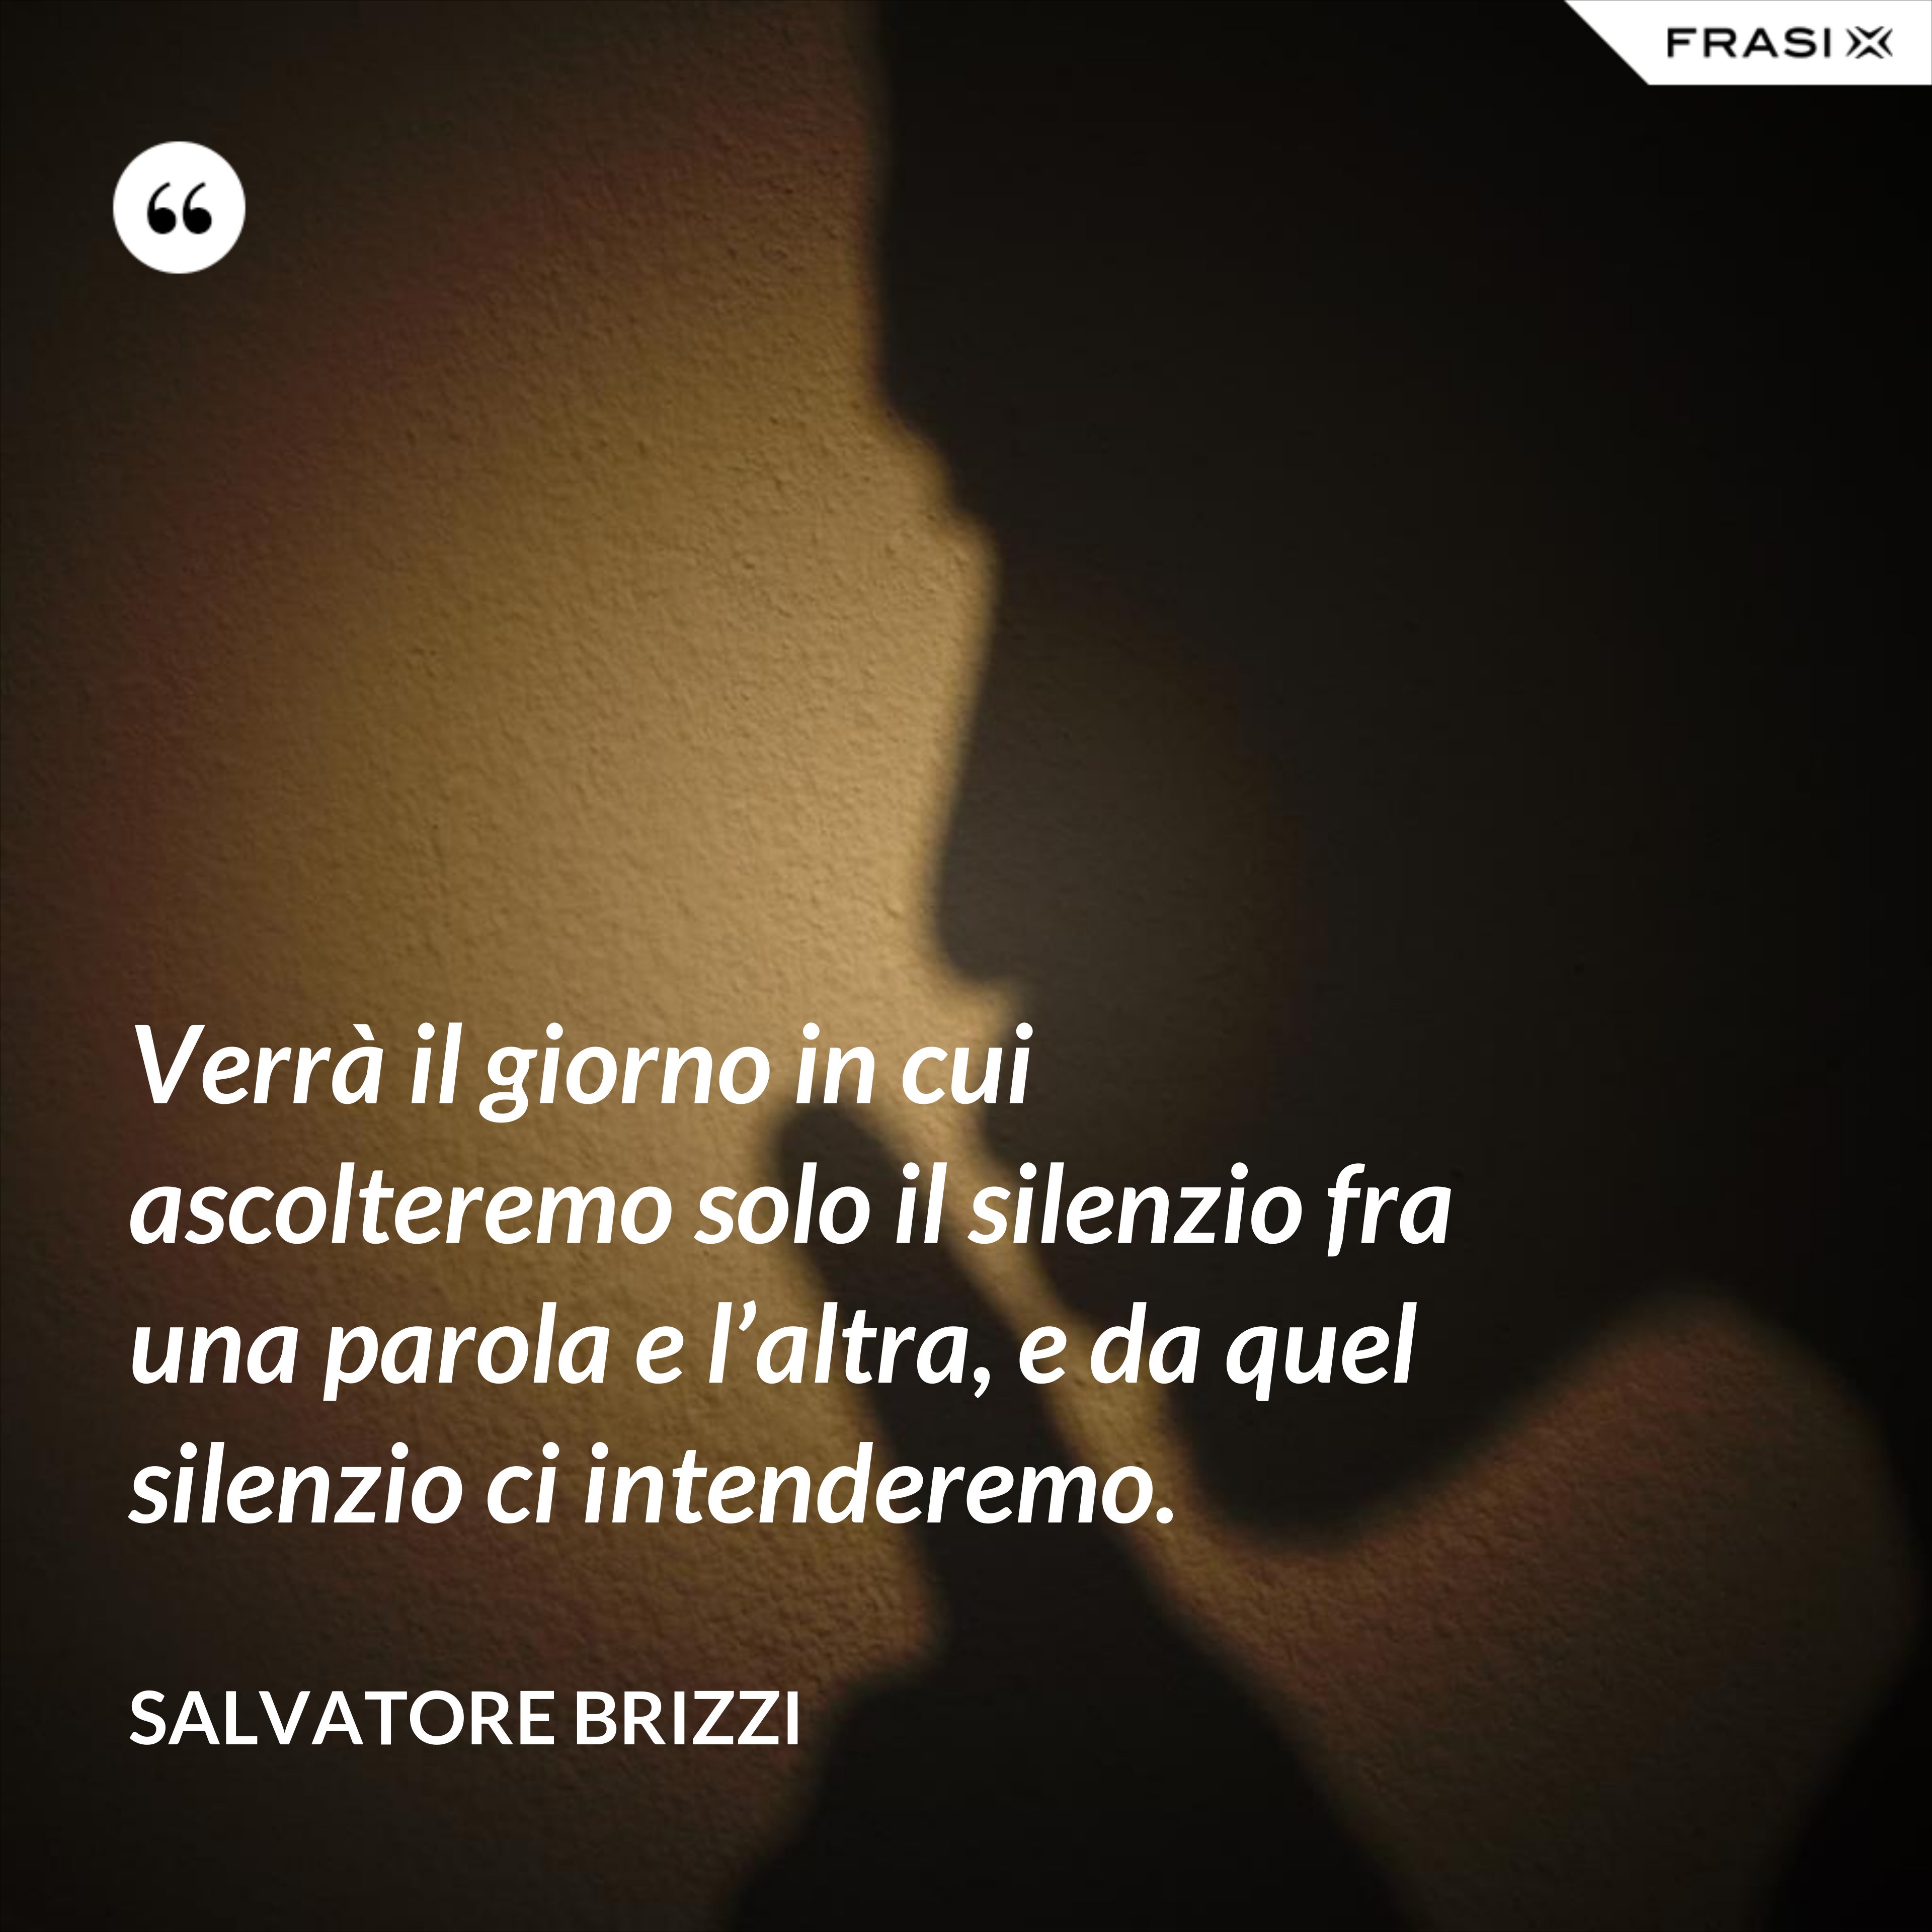 Verrà il giorno in cui ascolteremo solo il silenzio fra una parola e l’altra, e da quel silenzio ci intenderemo. - Salvatore Brizzi